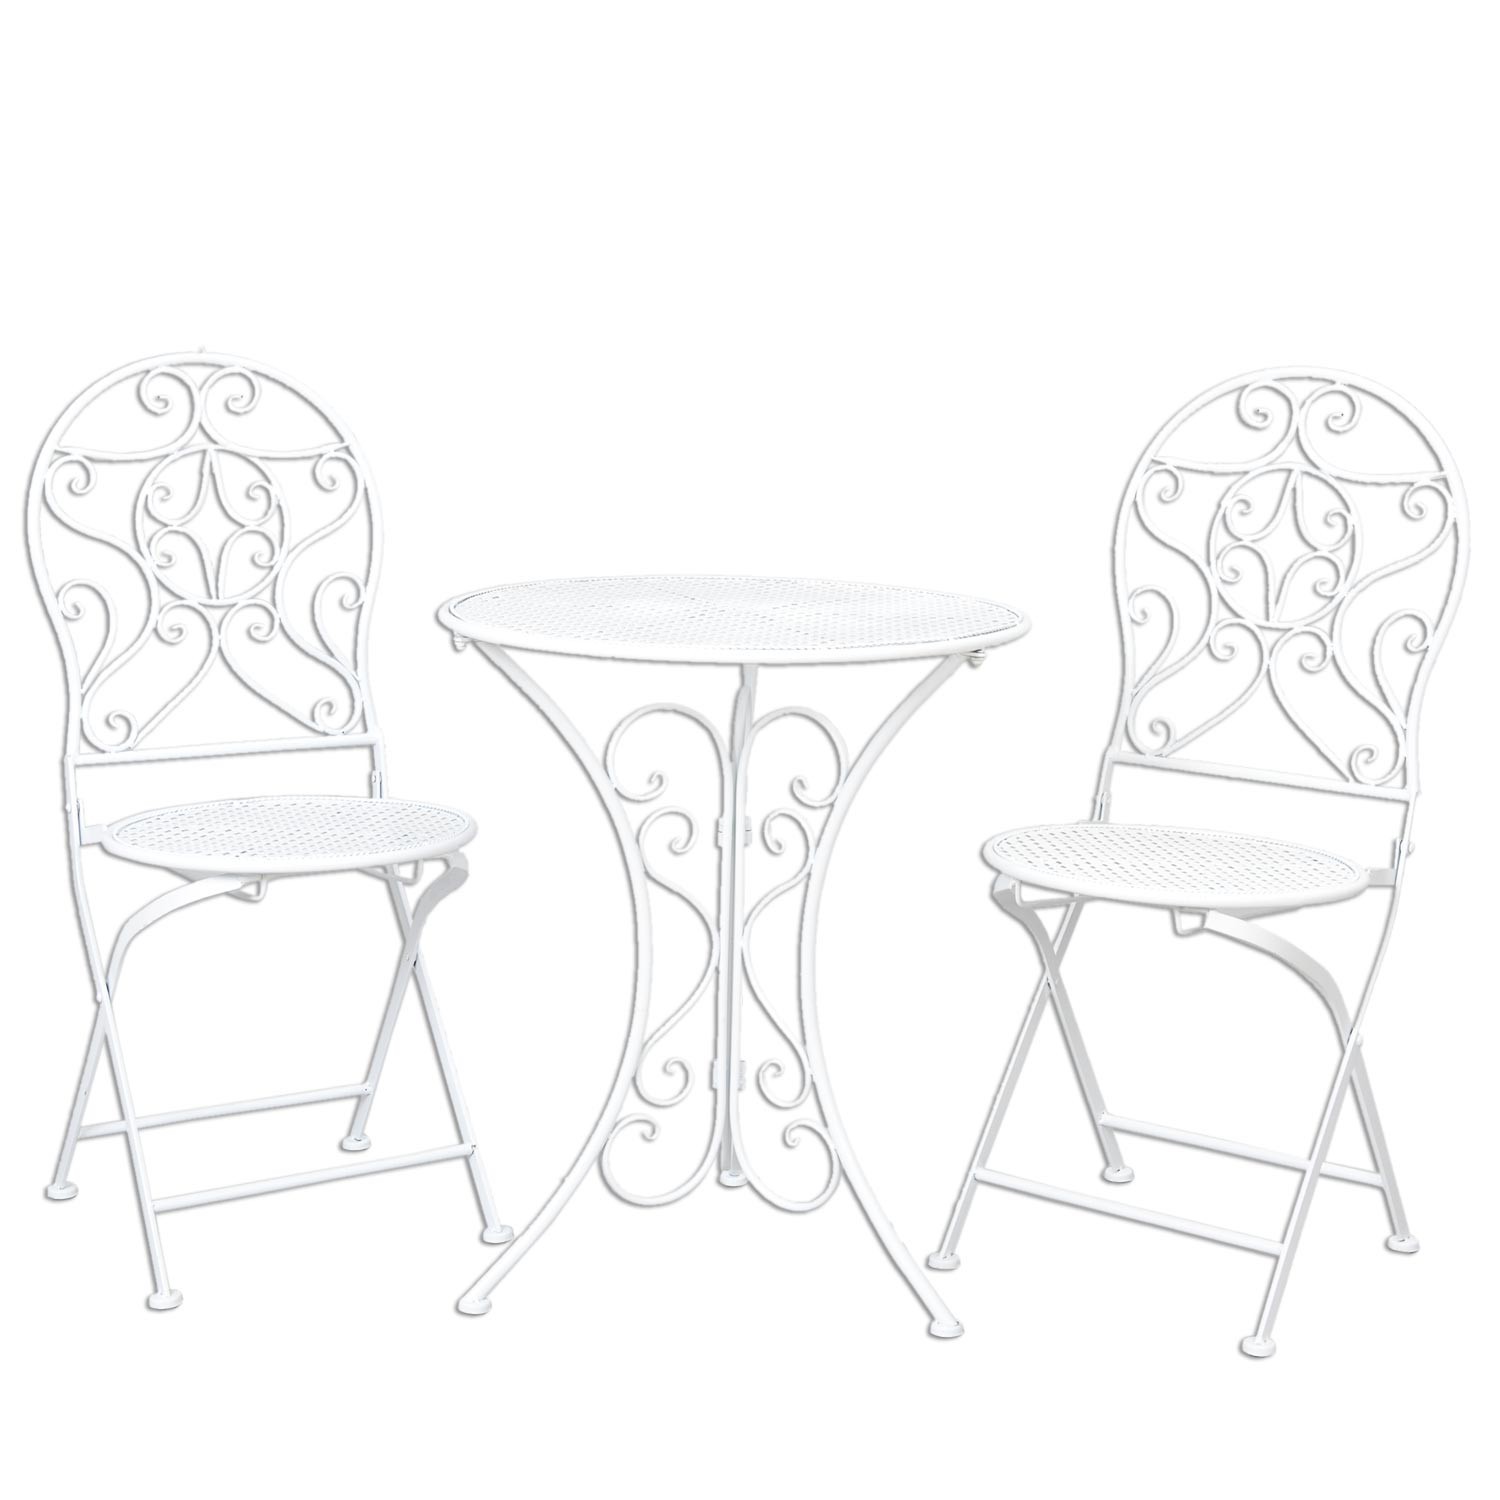 Levně Bílá zahradní skládací souprava - stůl + 2 židle - Ø 60*70 / 2x Ø 40*40*92 cm 5Y0190